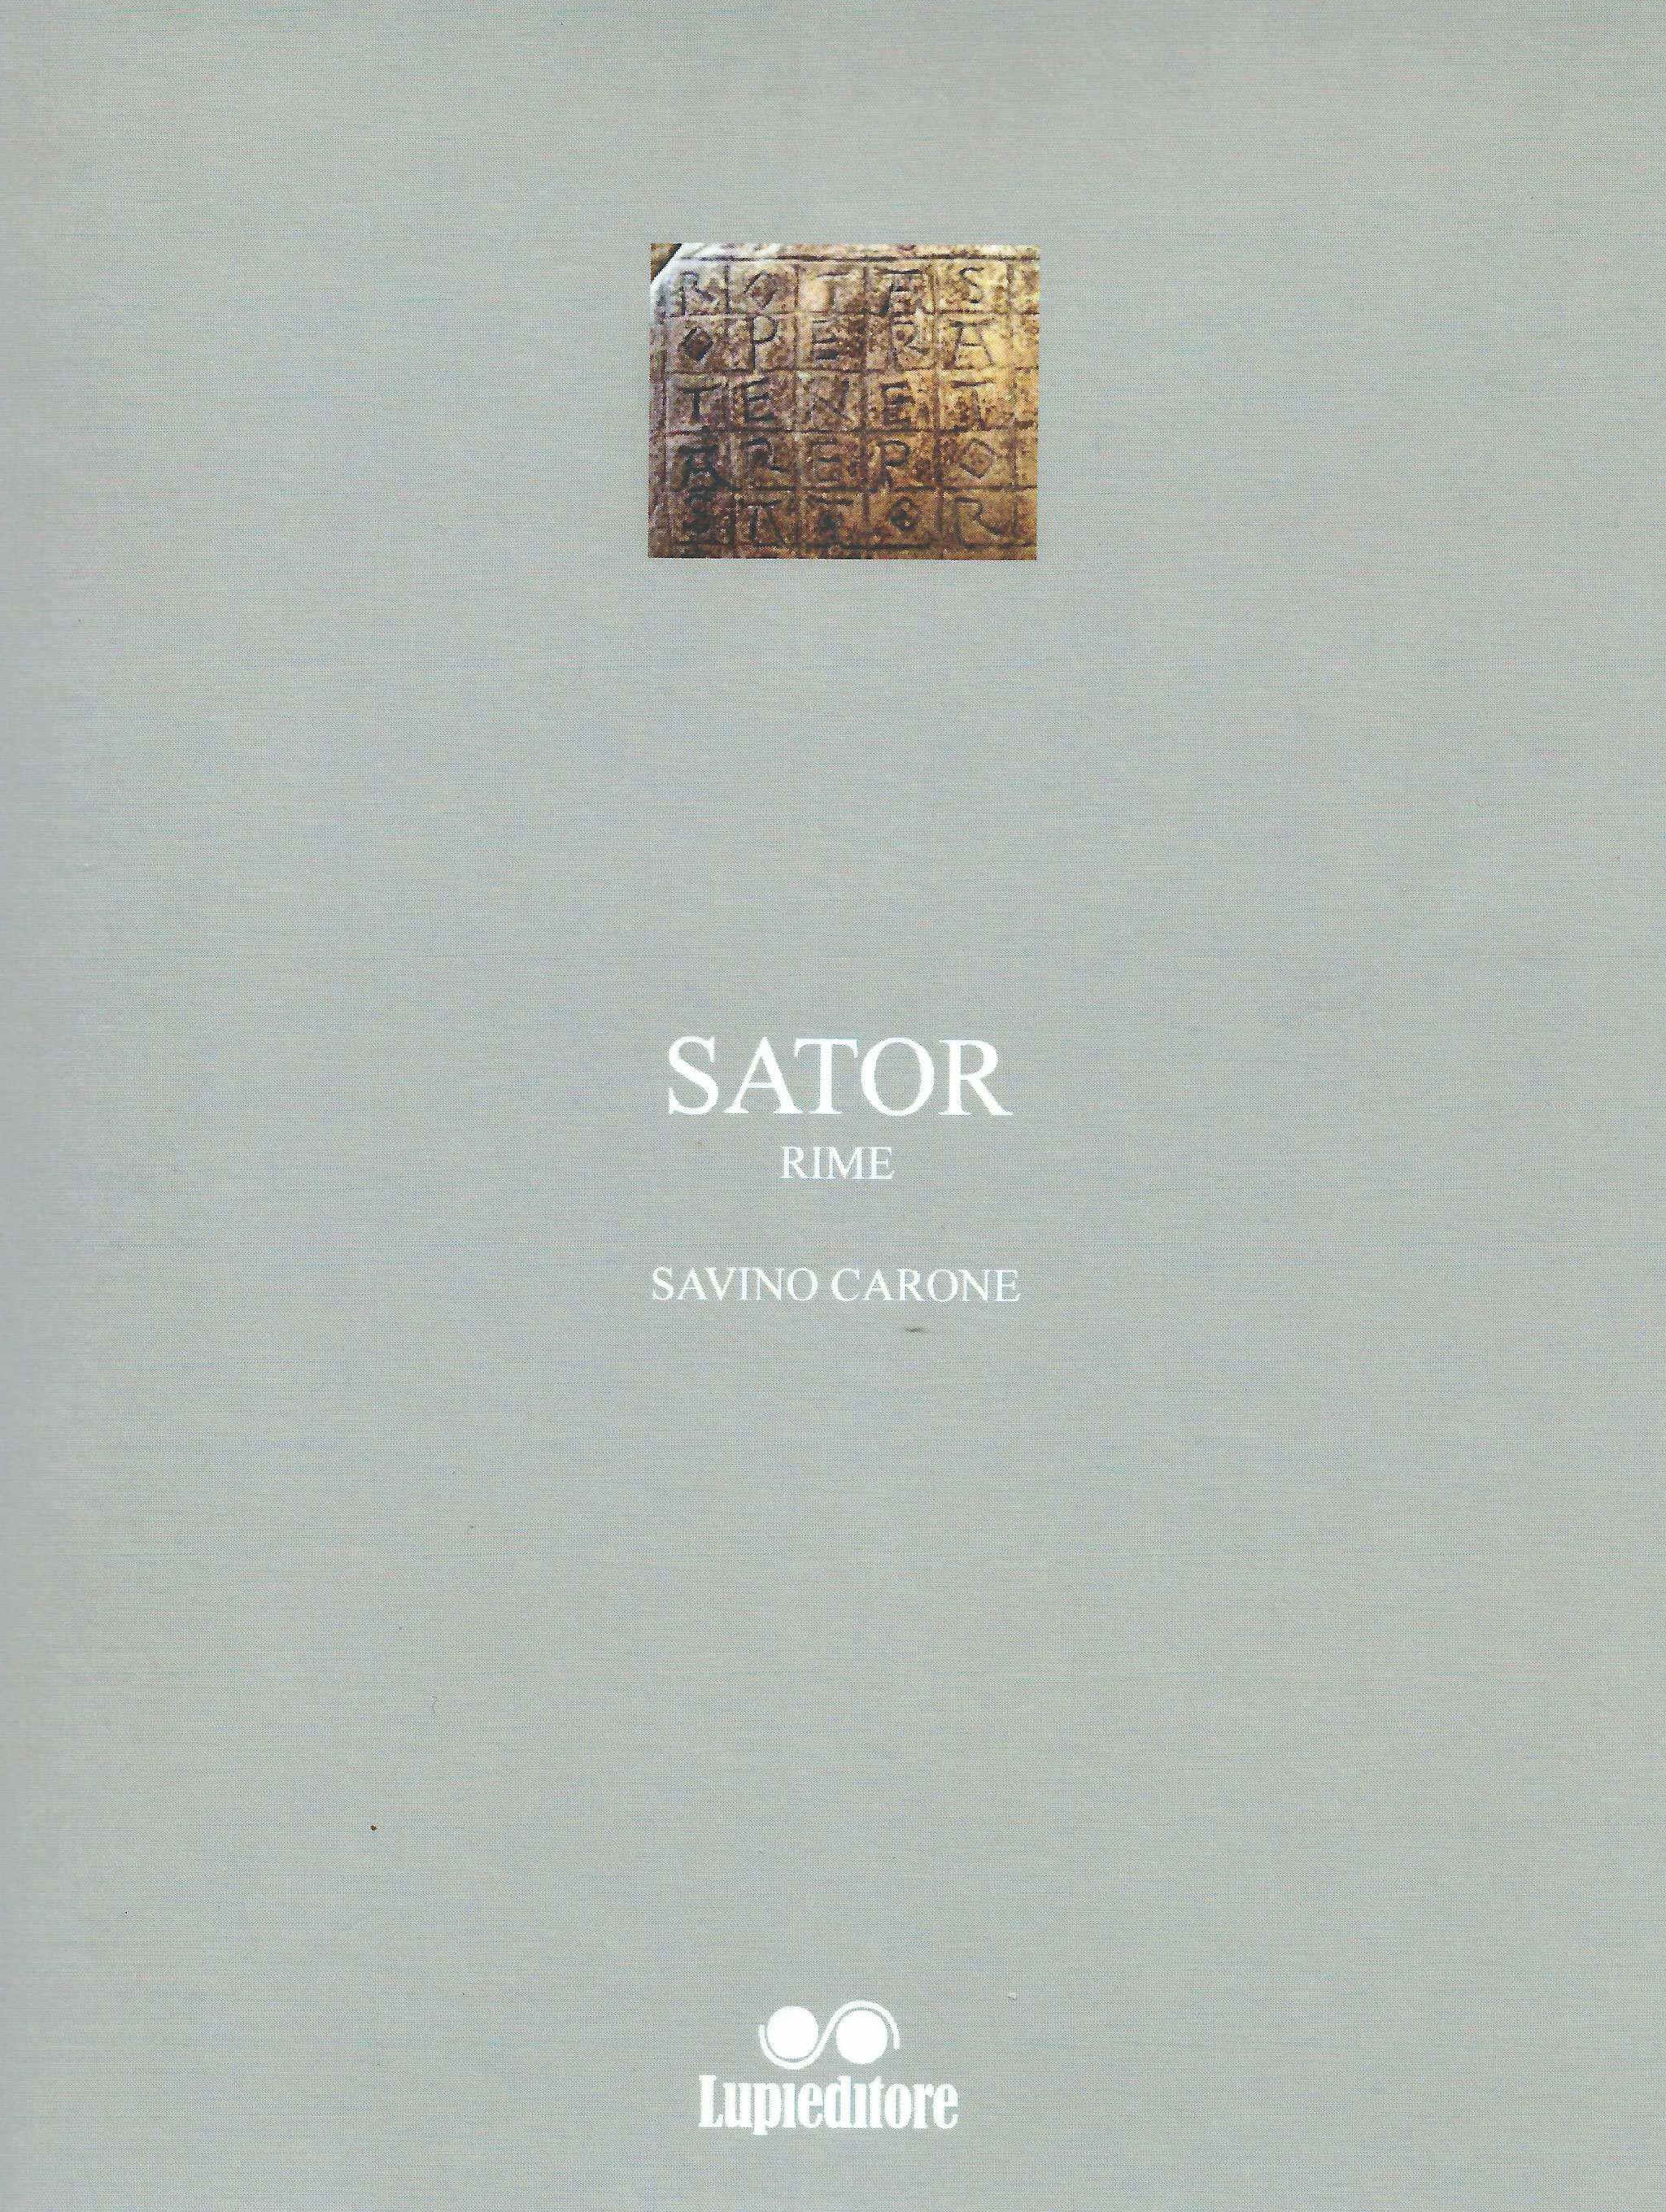 Sator, la poesia come enigma: esce in libreria la nuova silloge di Savino Carone